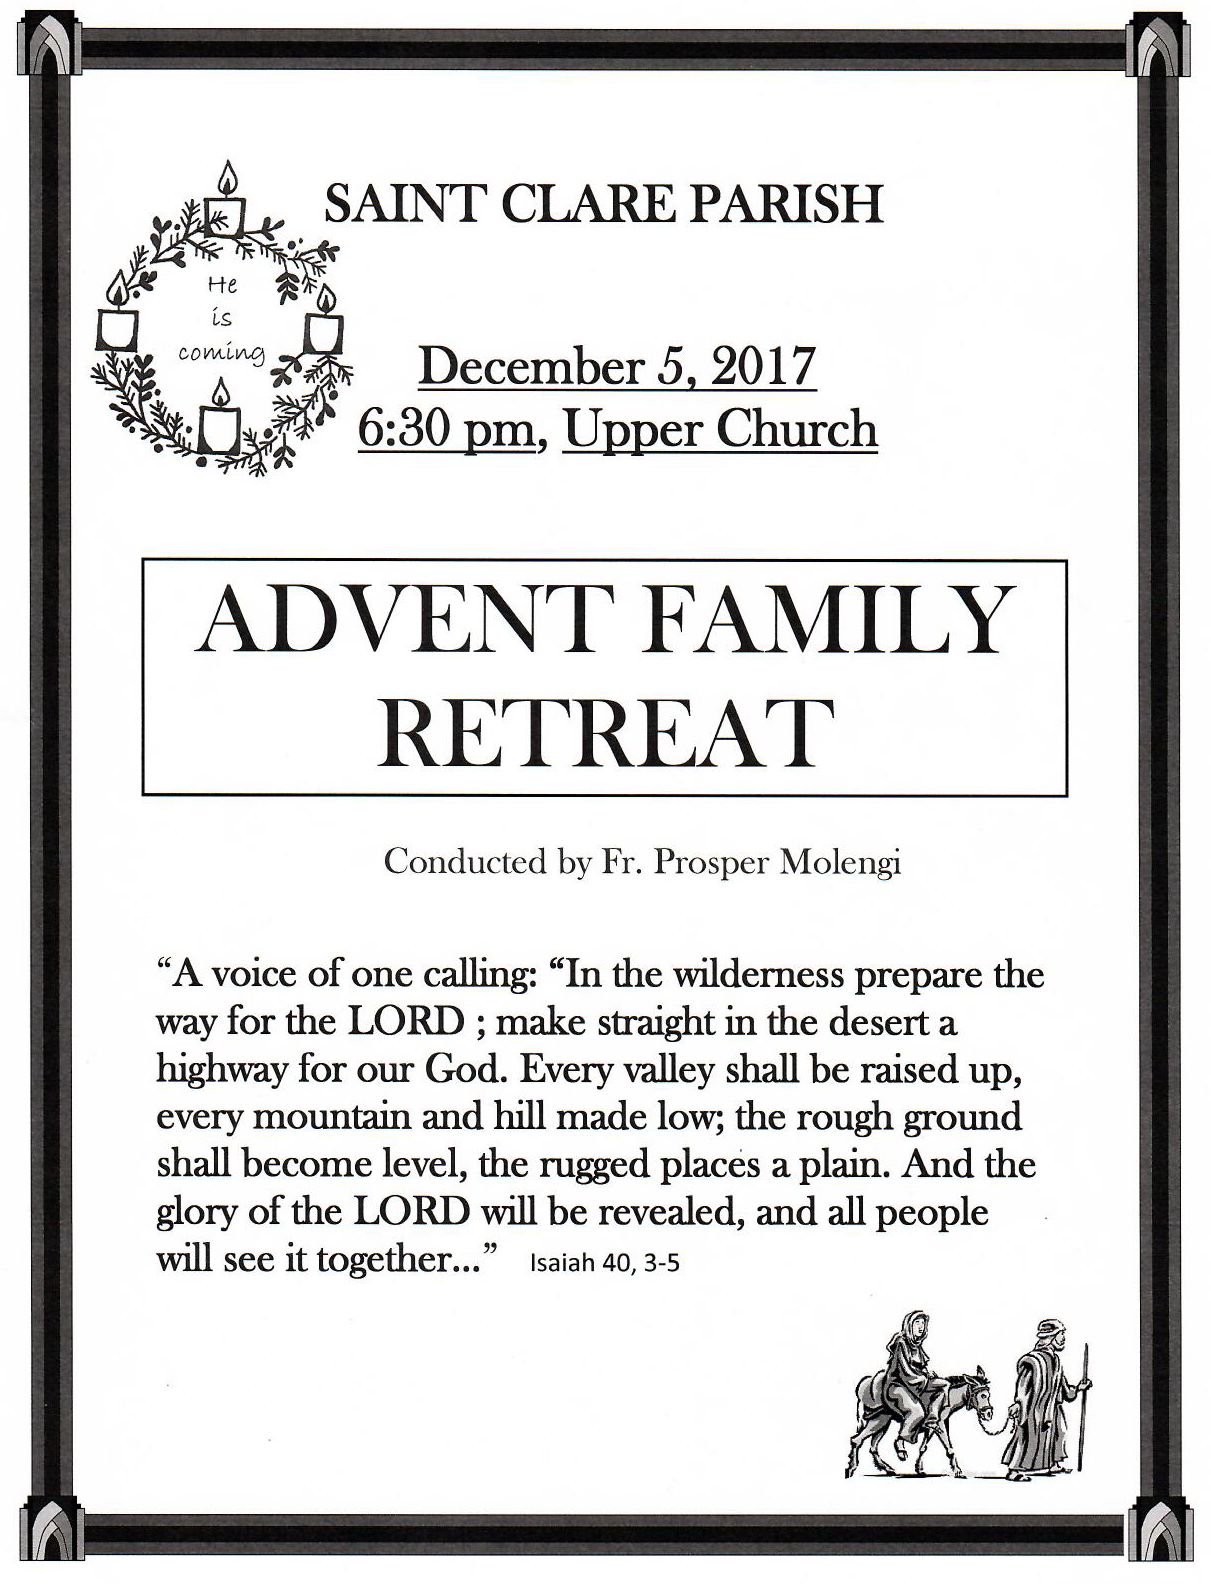 Advent Family Retreat – St. Clare Parish